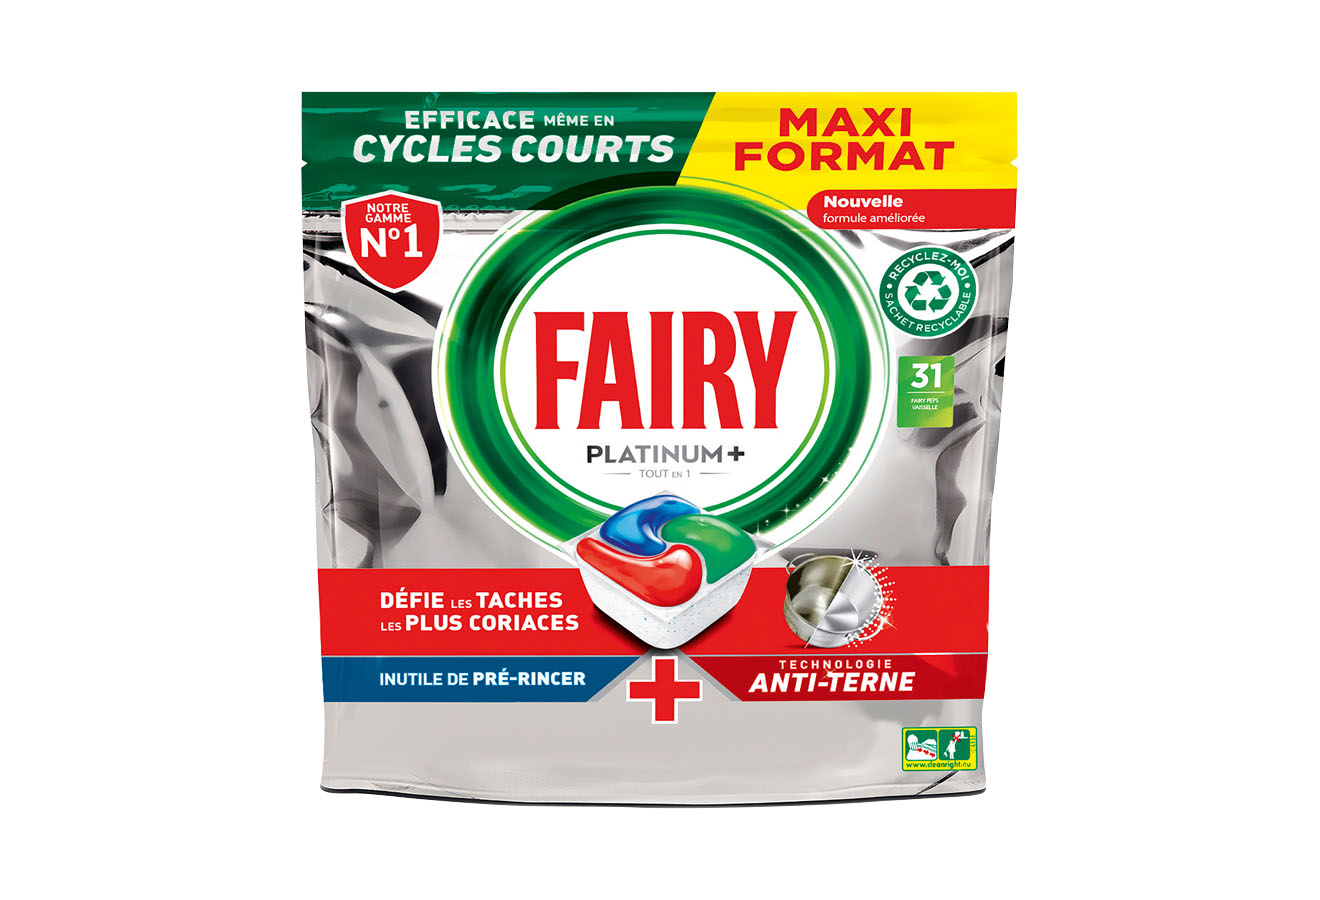 MPSM Fairy Set de nettoyage pour vaisselle – 1 x 320 ml Fairy Original  Liquide avec 1